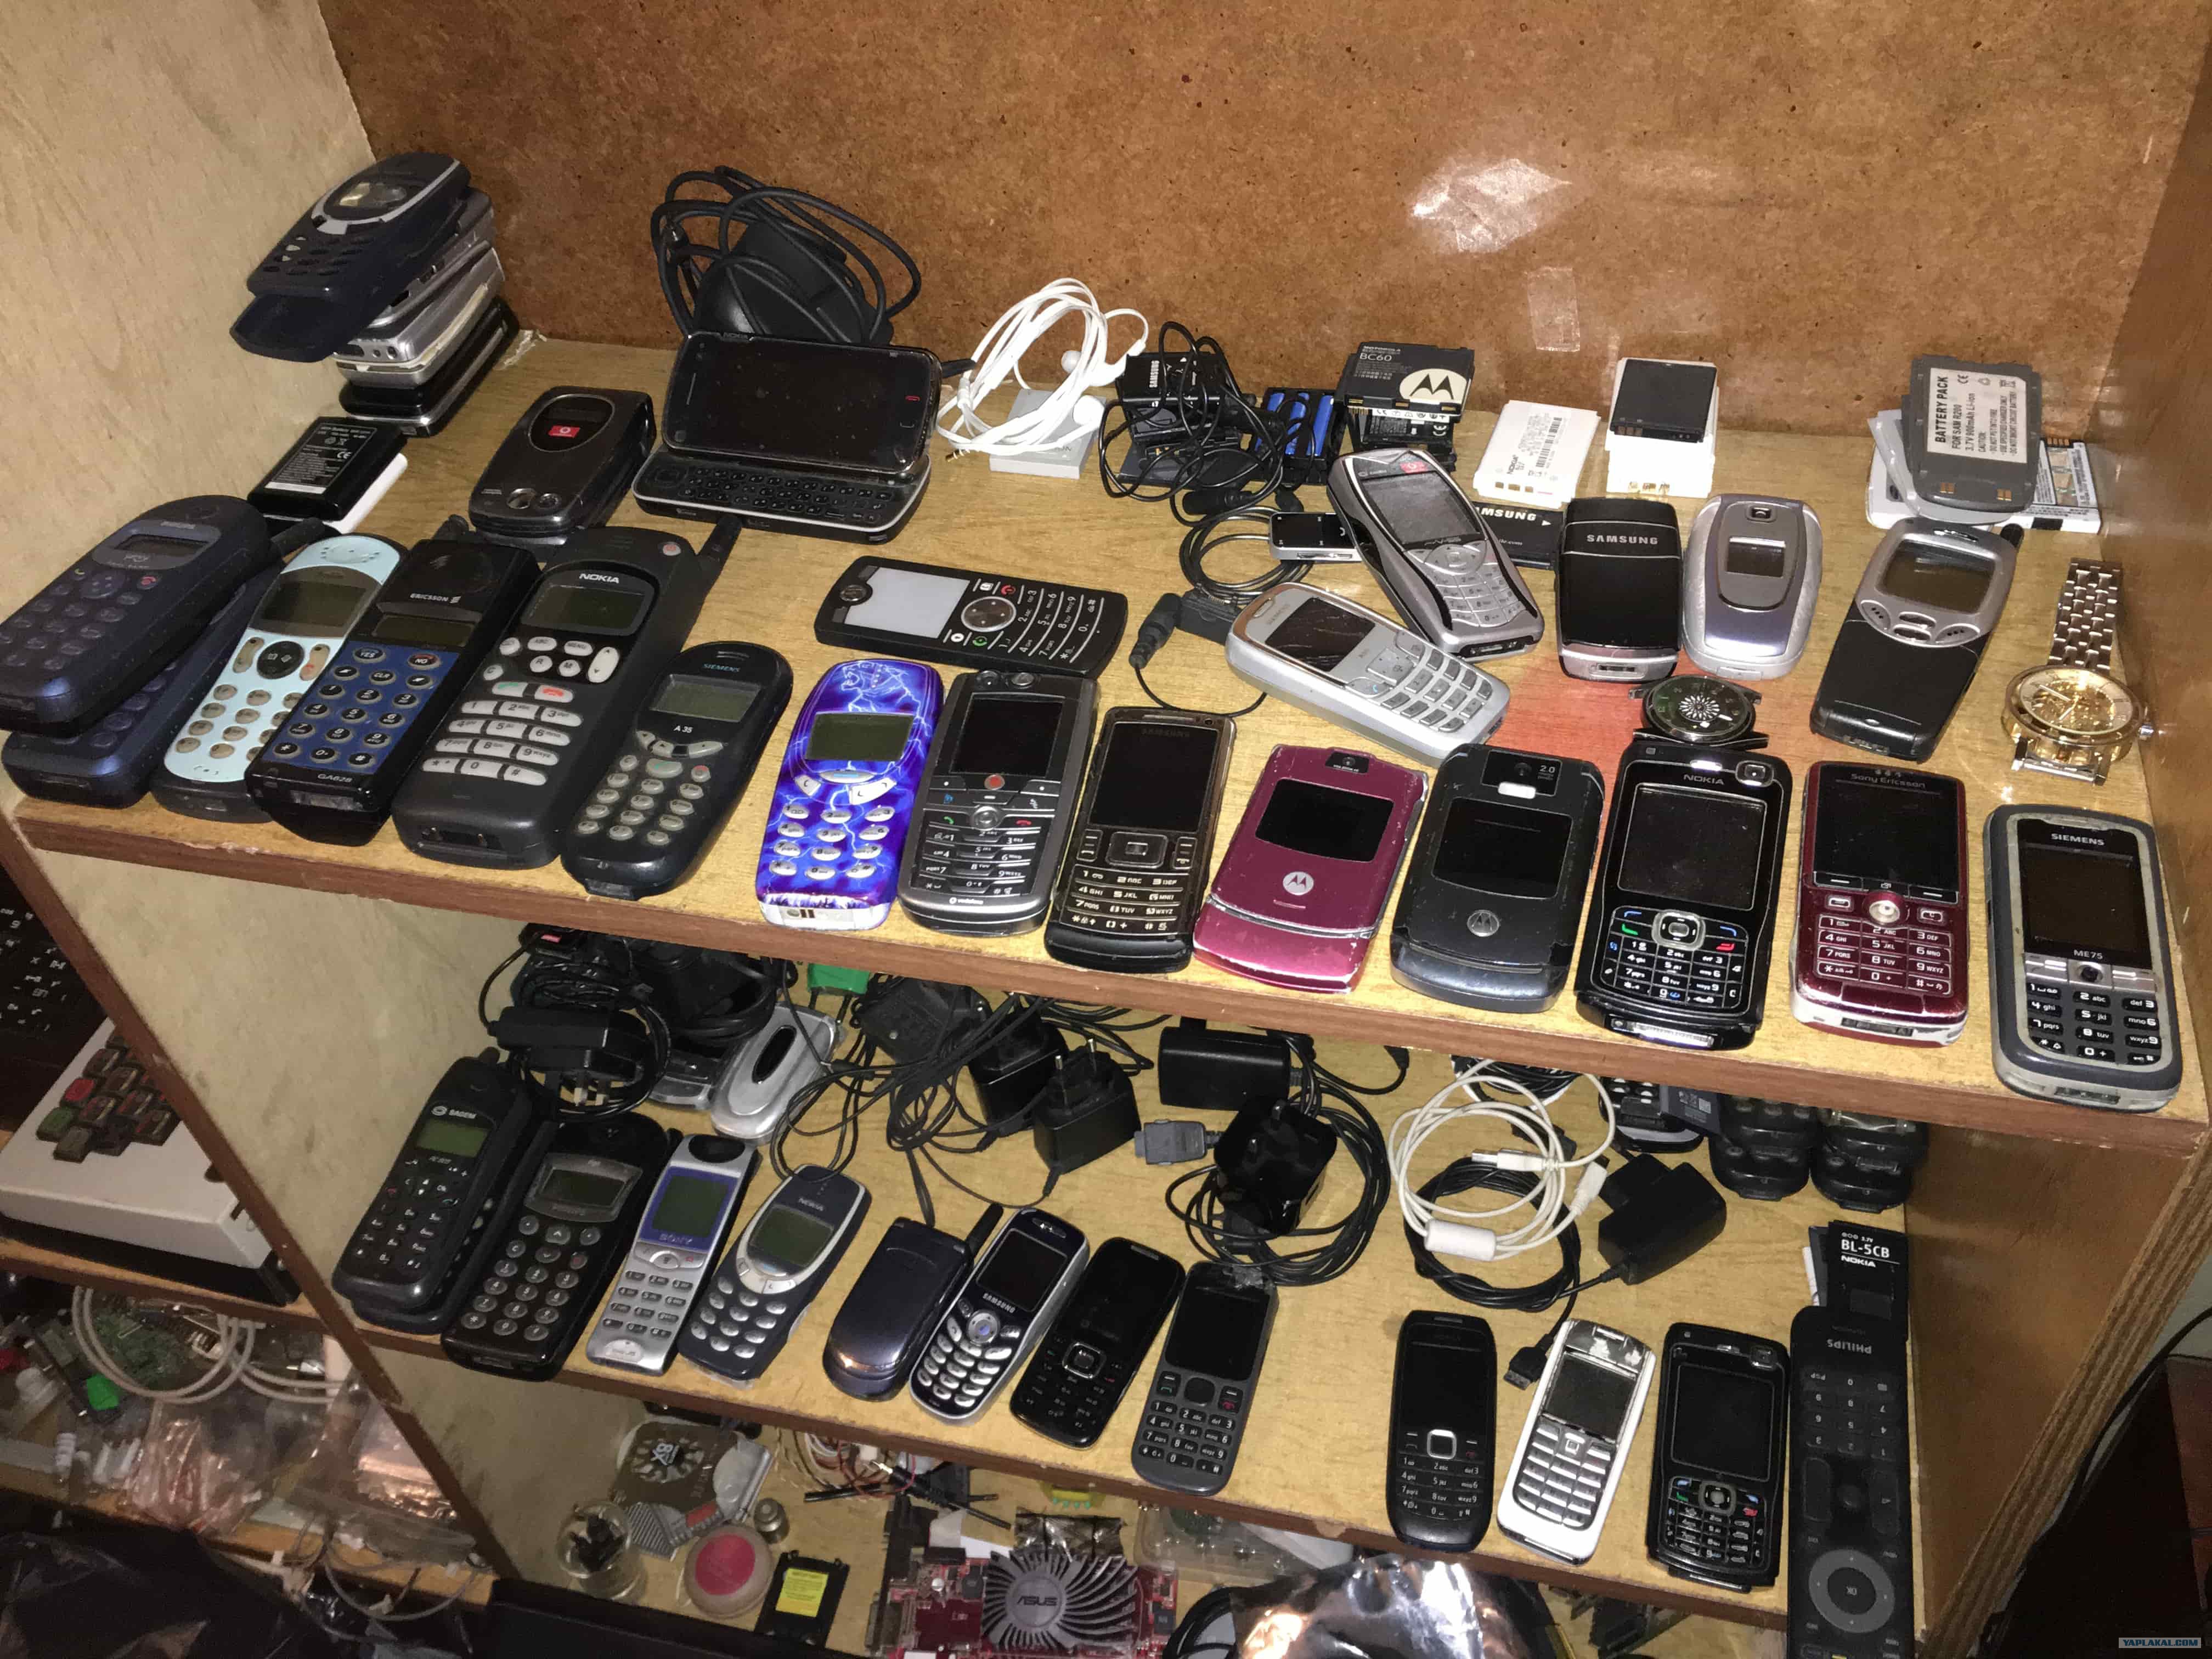 Бу телефоны в спб. Коллекция телефонов. Коллекция старых телефонов. Б/У телефоны. Старые мобильные телефоны.